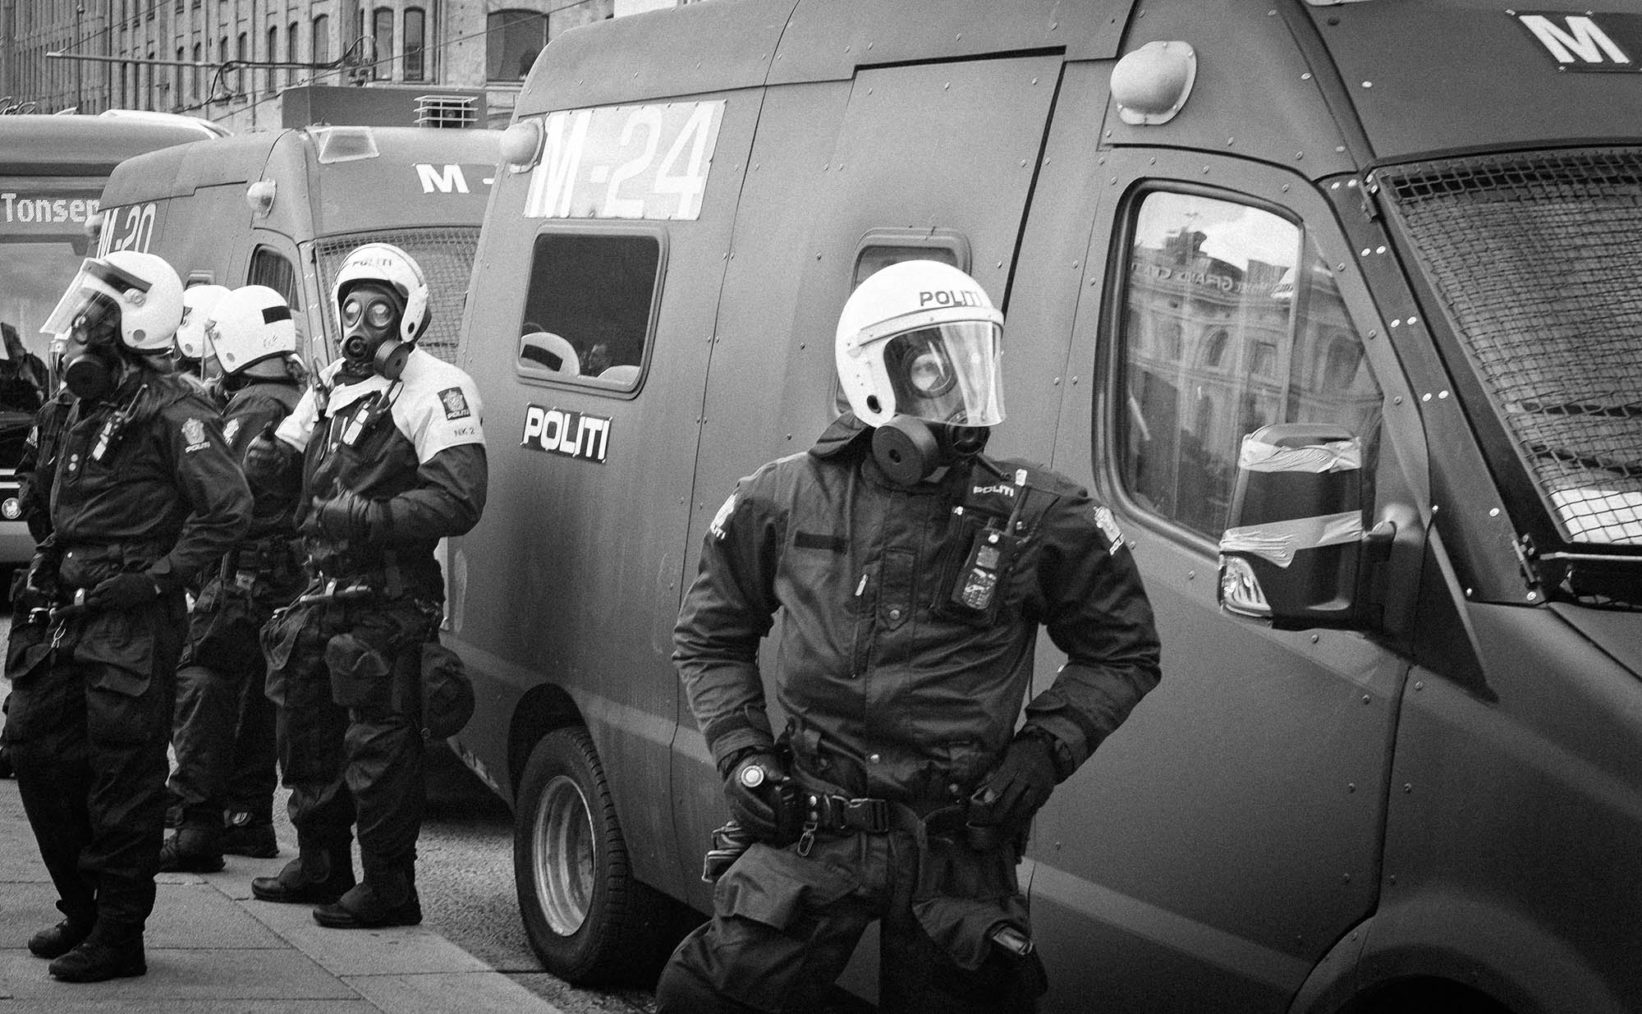 Bilde av uniformert politi med hjelmer, gassmasker og annet verneutstyr på gaten i Oslo.